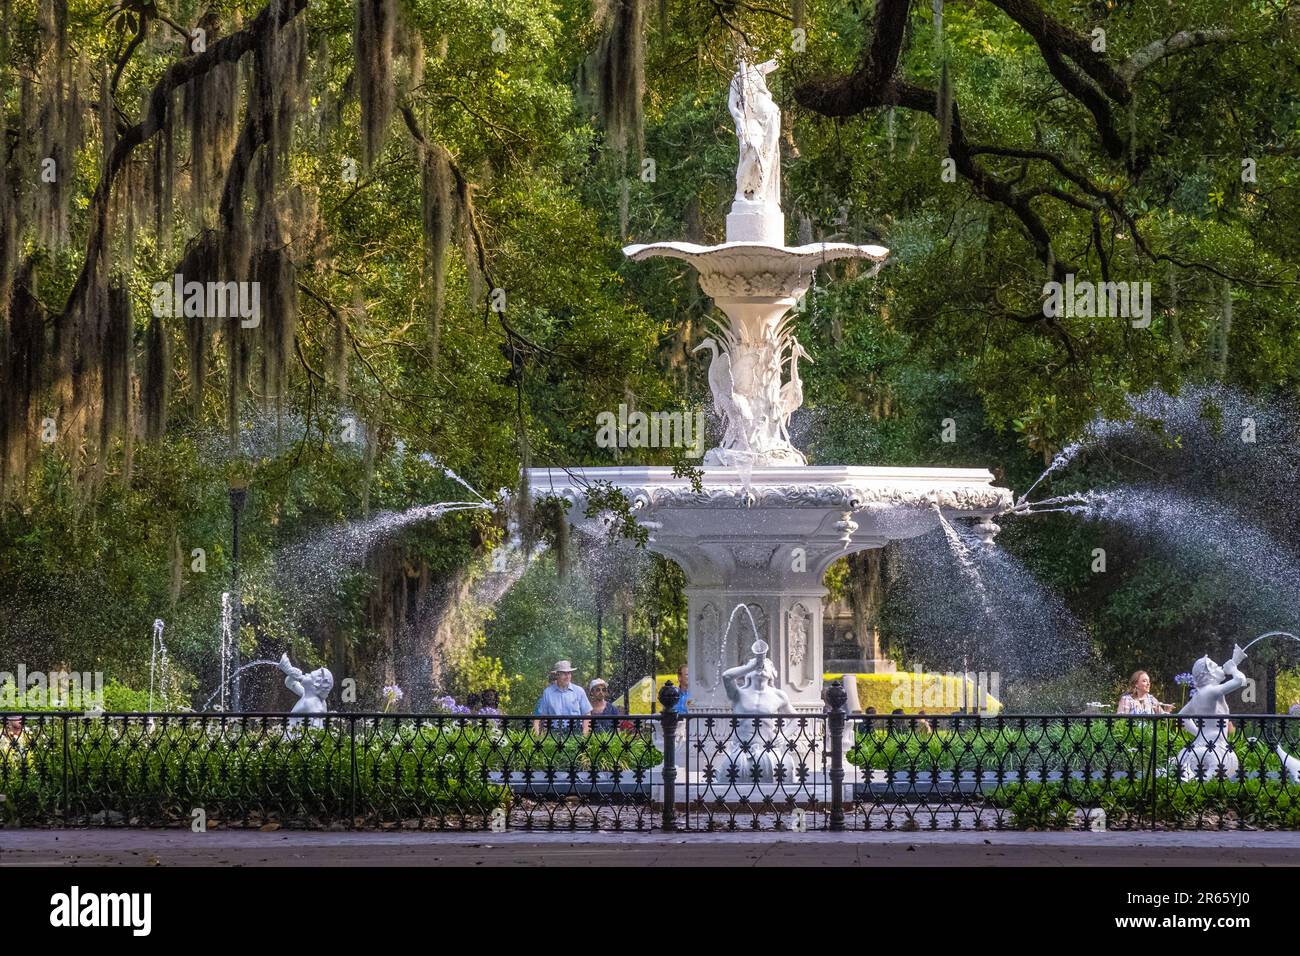 Forsyth Park Fountain, un site emblématique de Savannah datant du 19th siècle à Savannah, le quartier historique de Géorgie. (ÉTATS-UNIS) Banque D'Images